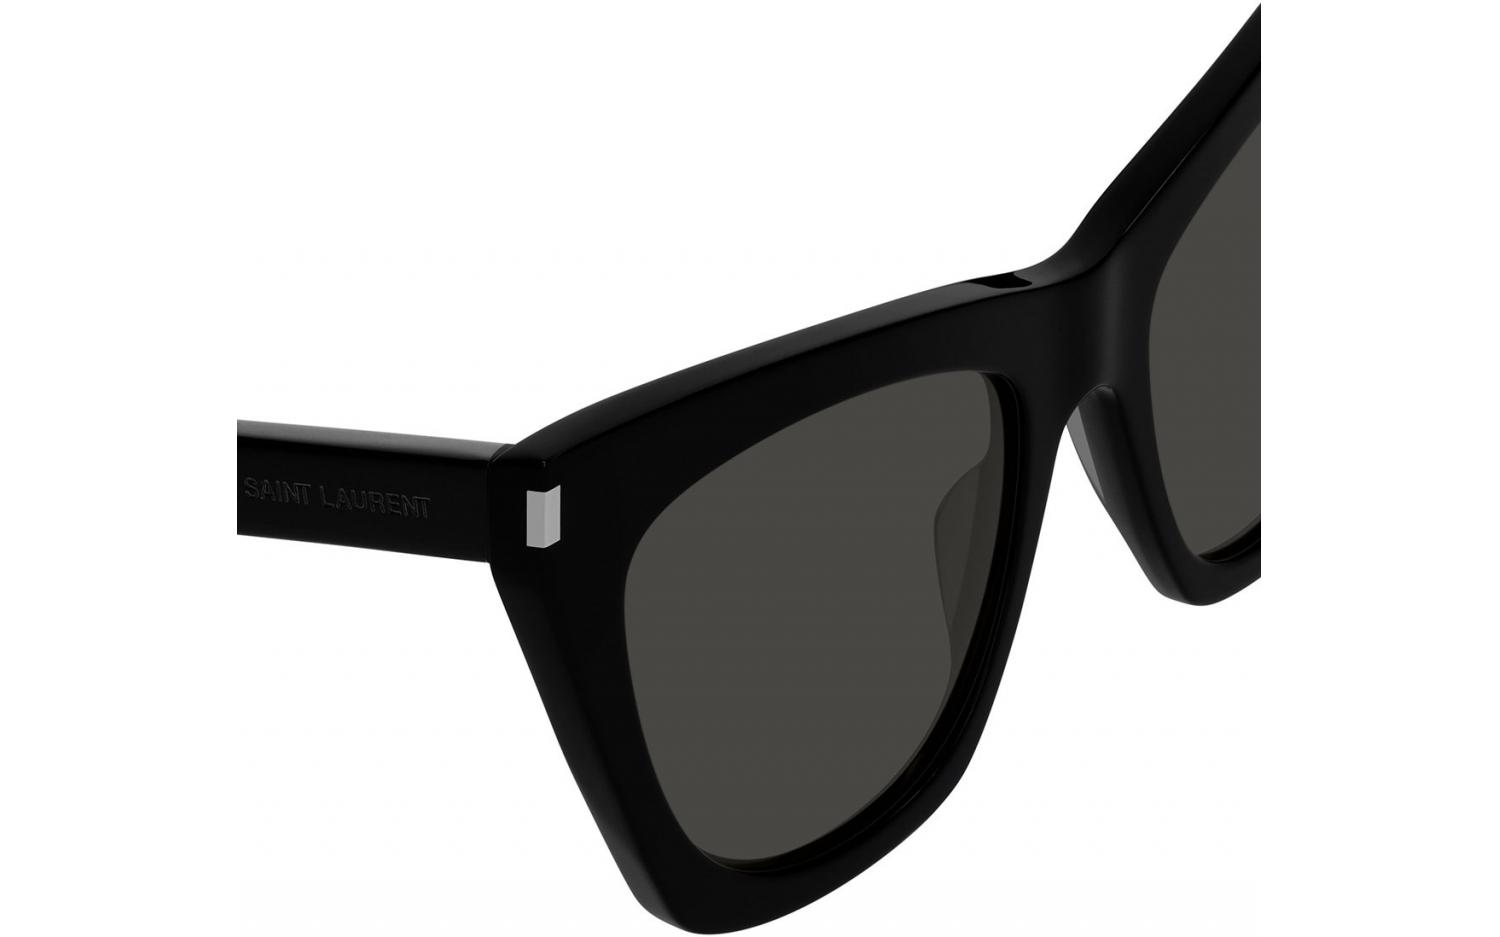 lenshop on X: Saint Laurent's black acetate Kate sunglasses are a